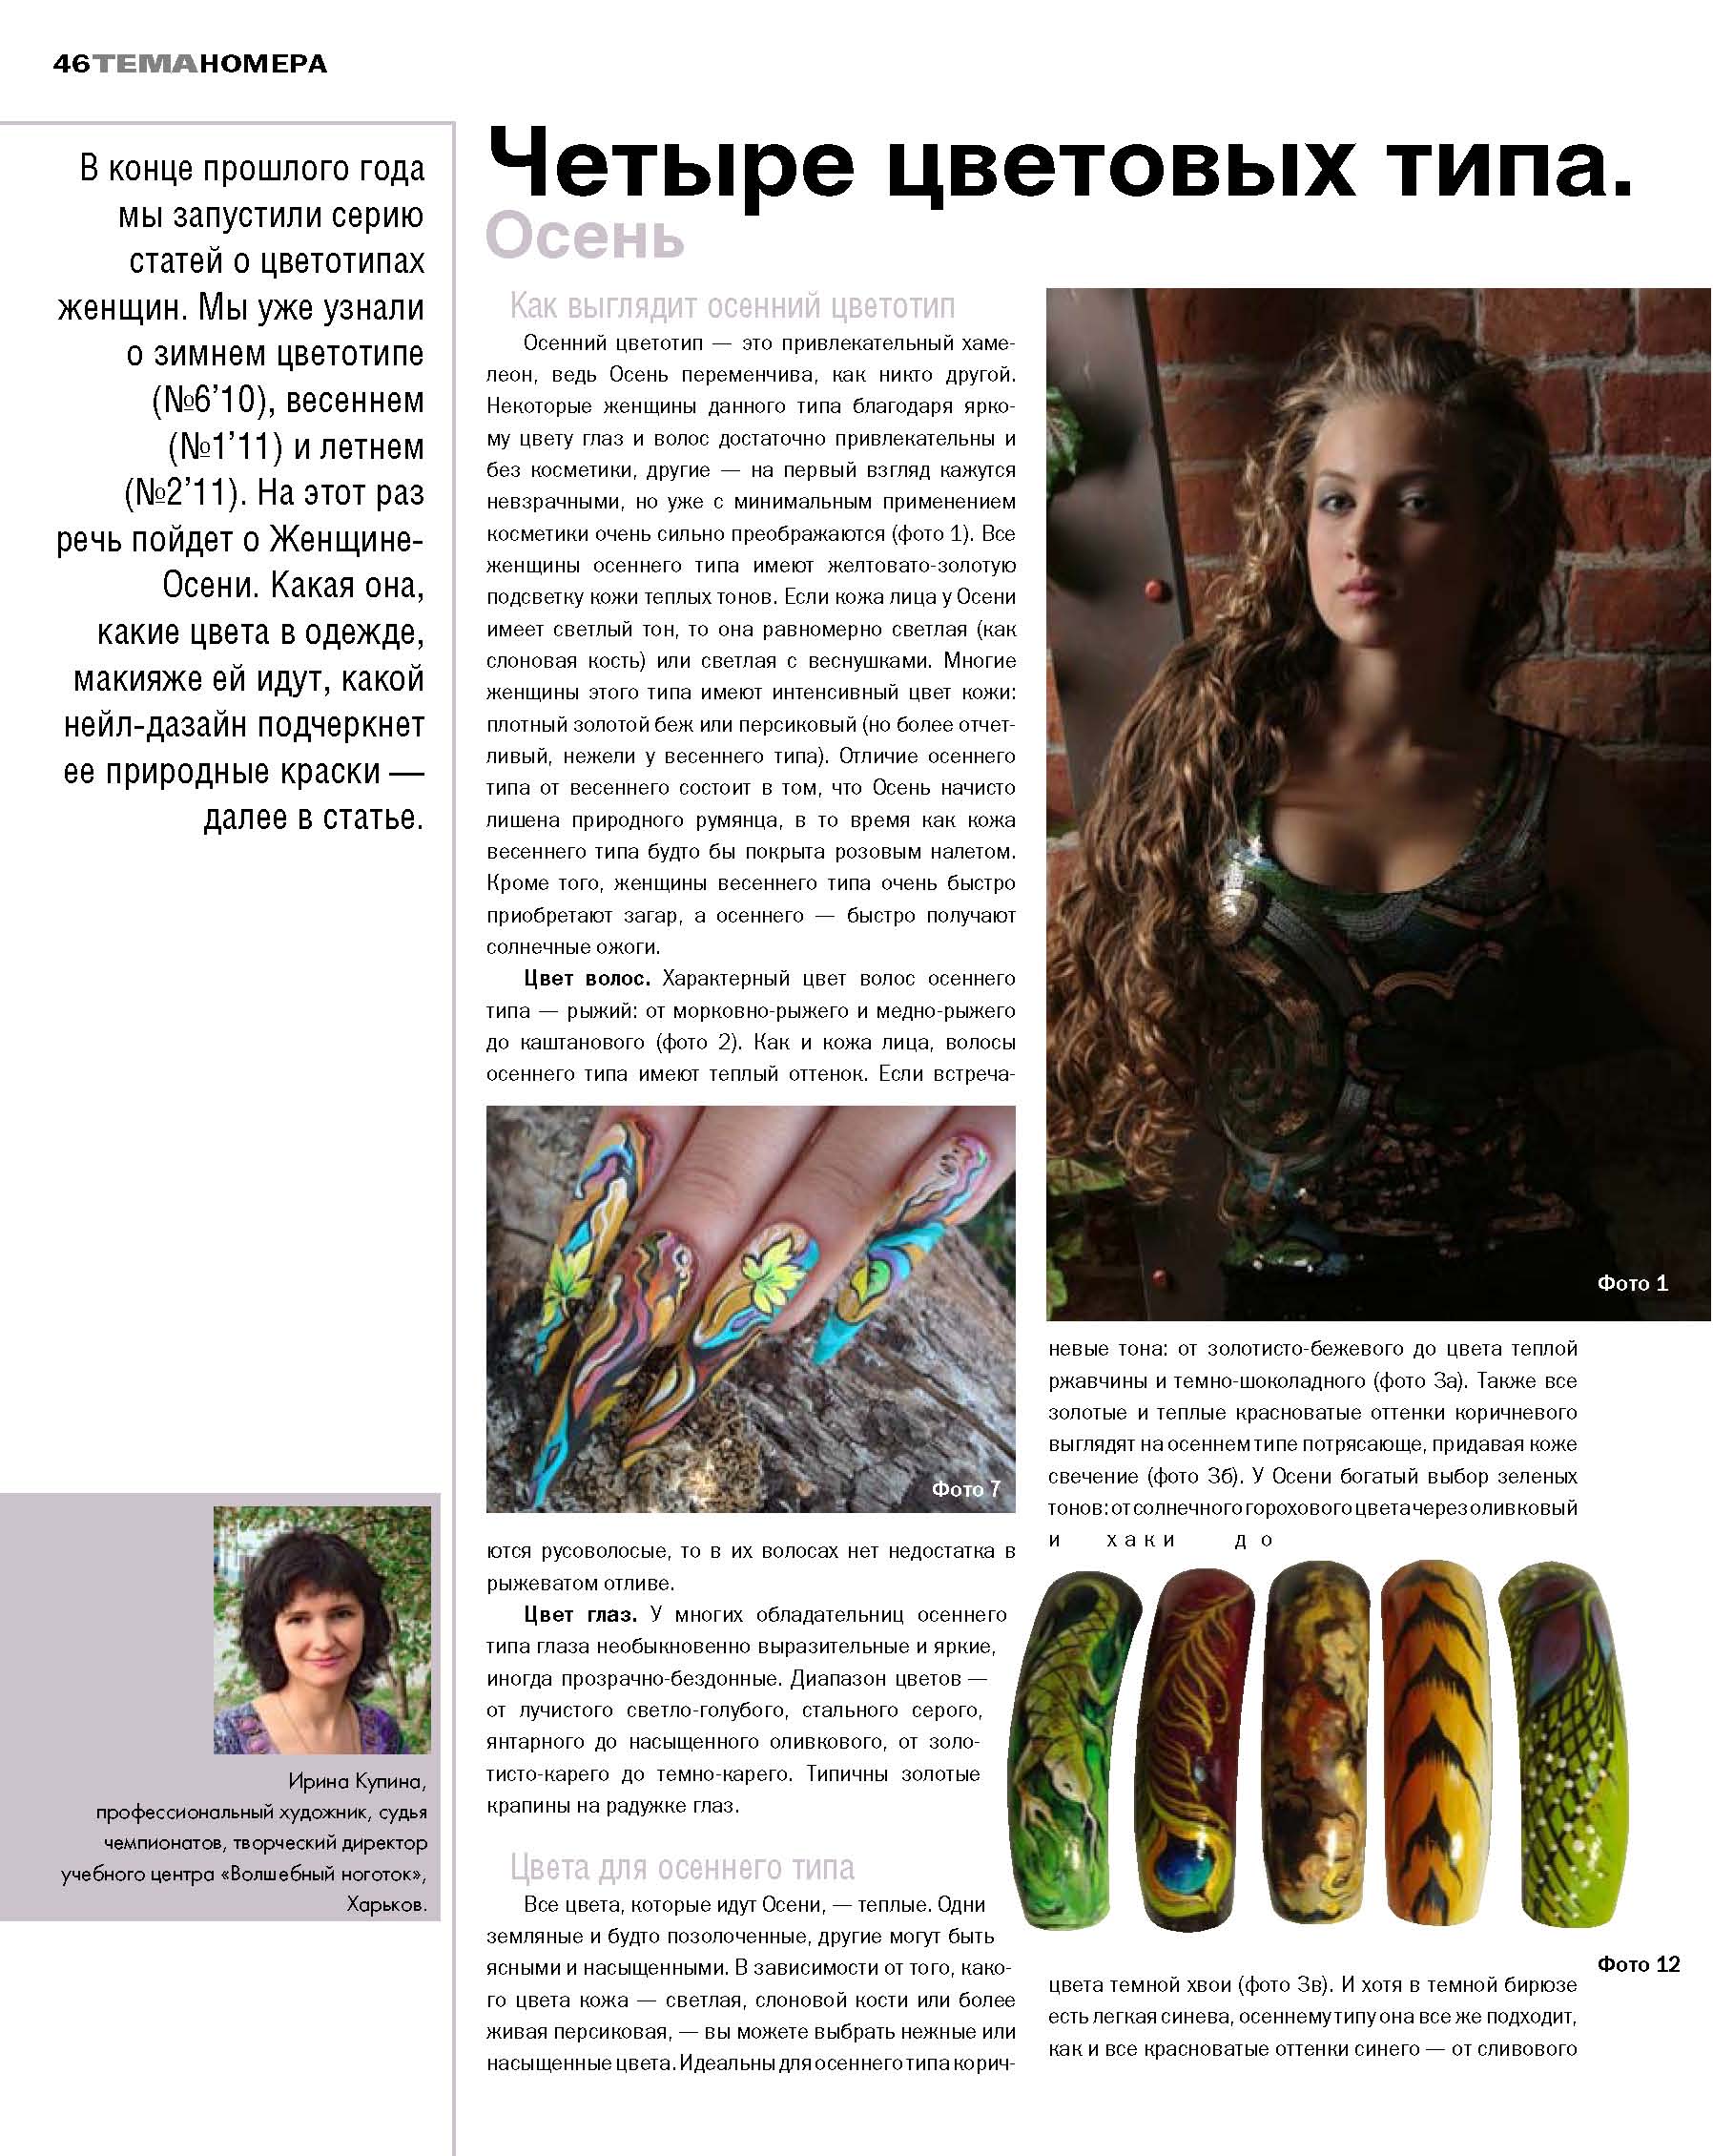 Серия из четырёх публикаций 
Четыре цветовых типа женщины
в журнале Nail ПРАКТИКА - ОСЕНЬ